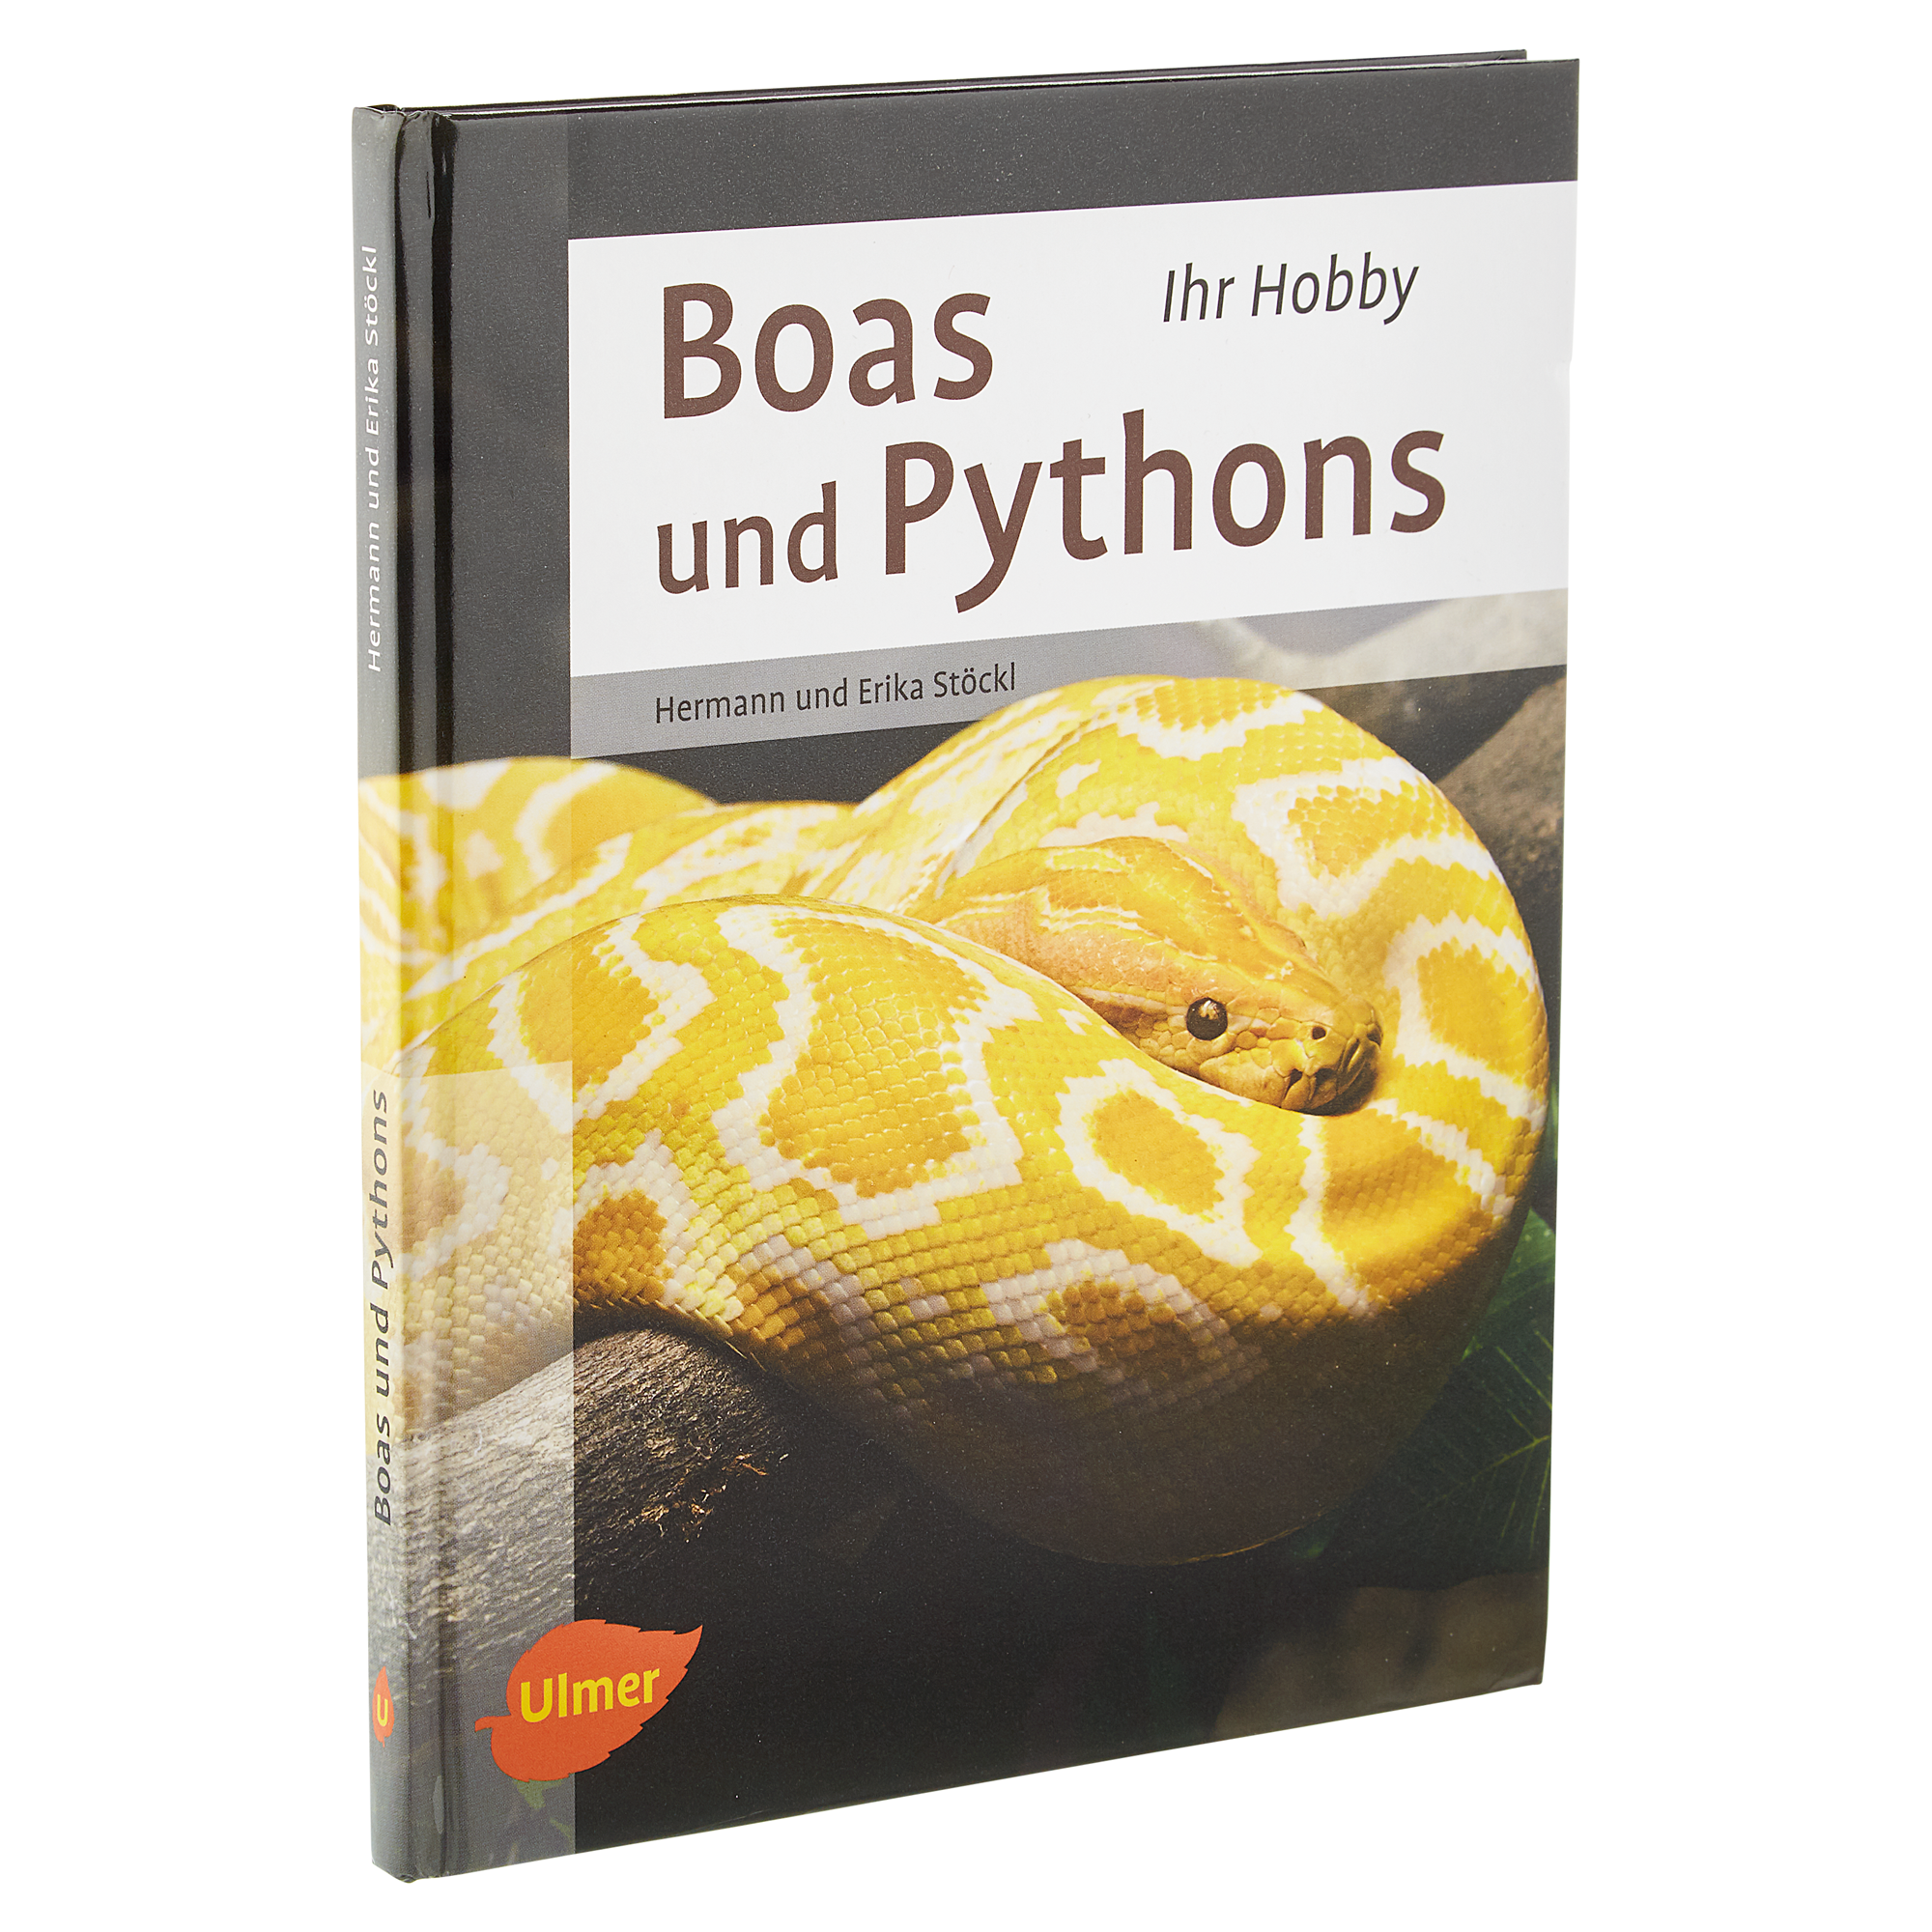 Ulmer-Tierratgeber "Ihr Hobby: Boas und Pythons" HC 95 S. + product picture